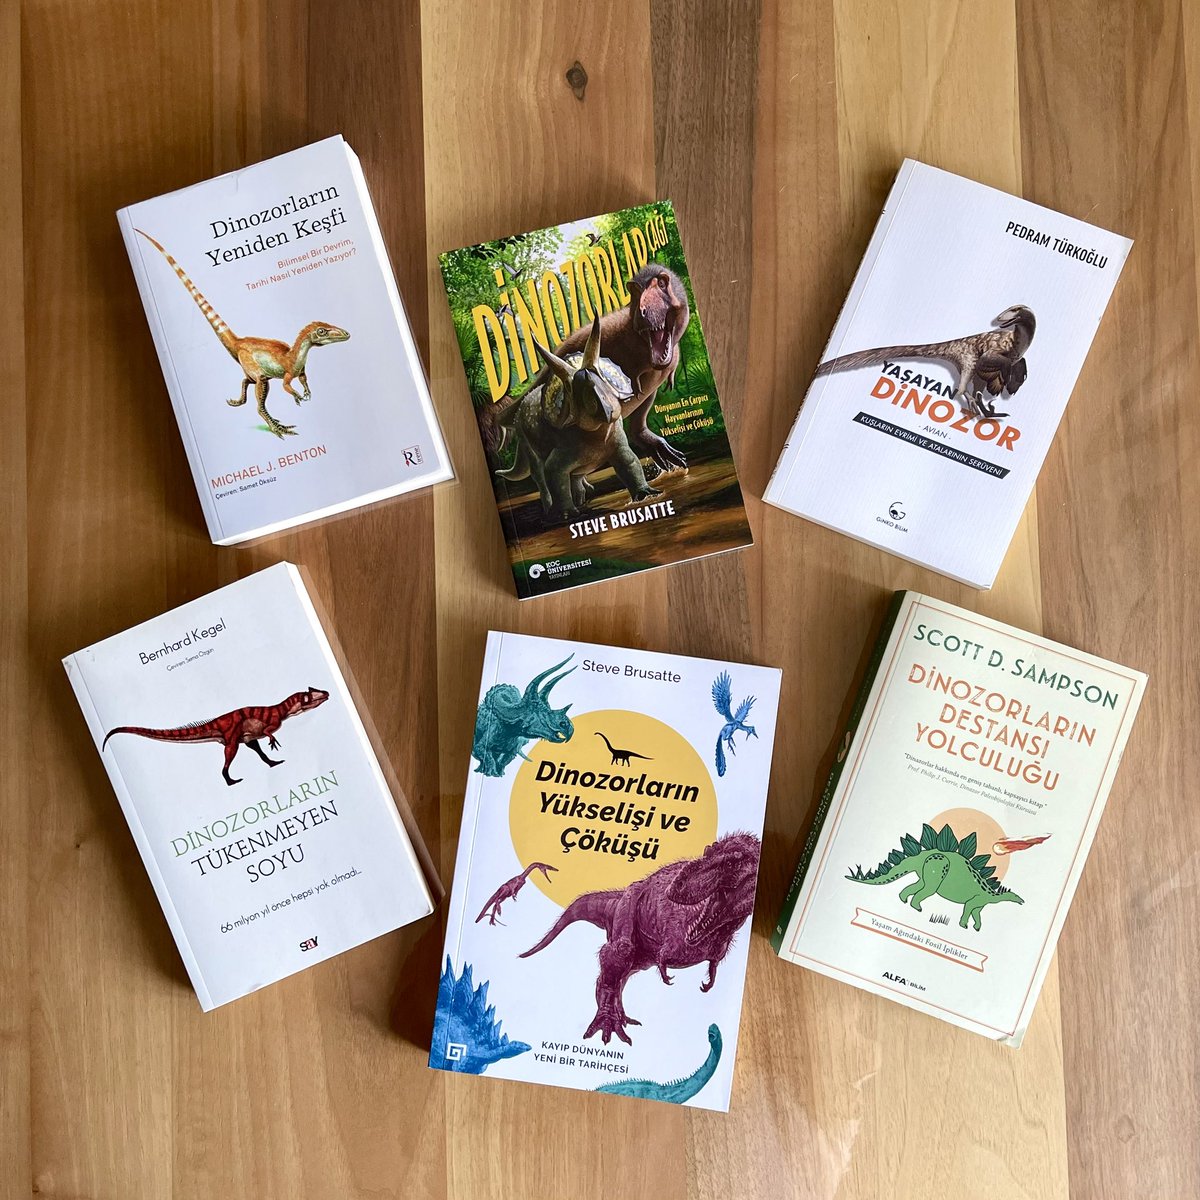 Dinozorlar (omurgalı paleozoolojisi) hakkındaki Türkçe bilim kitabı sayısı 6’ya yükseldi.